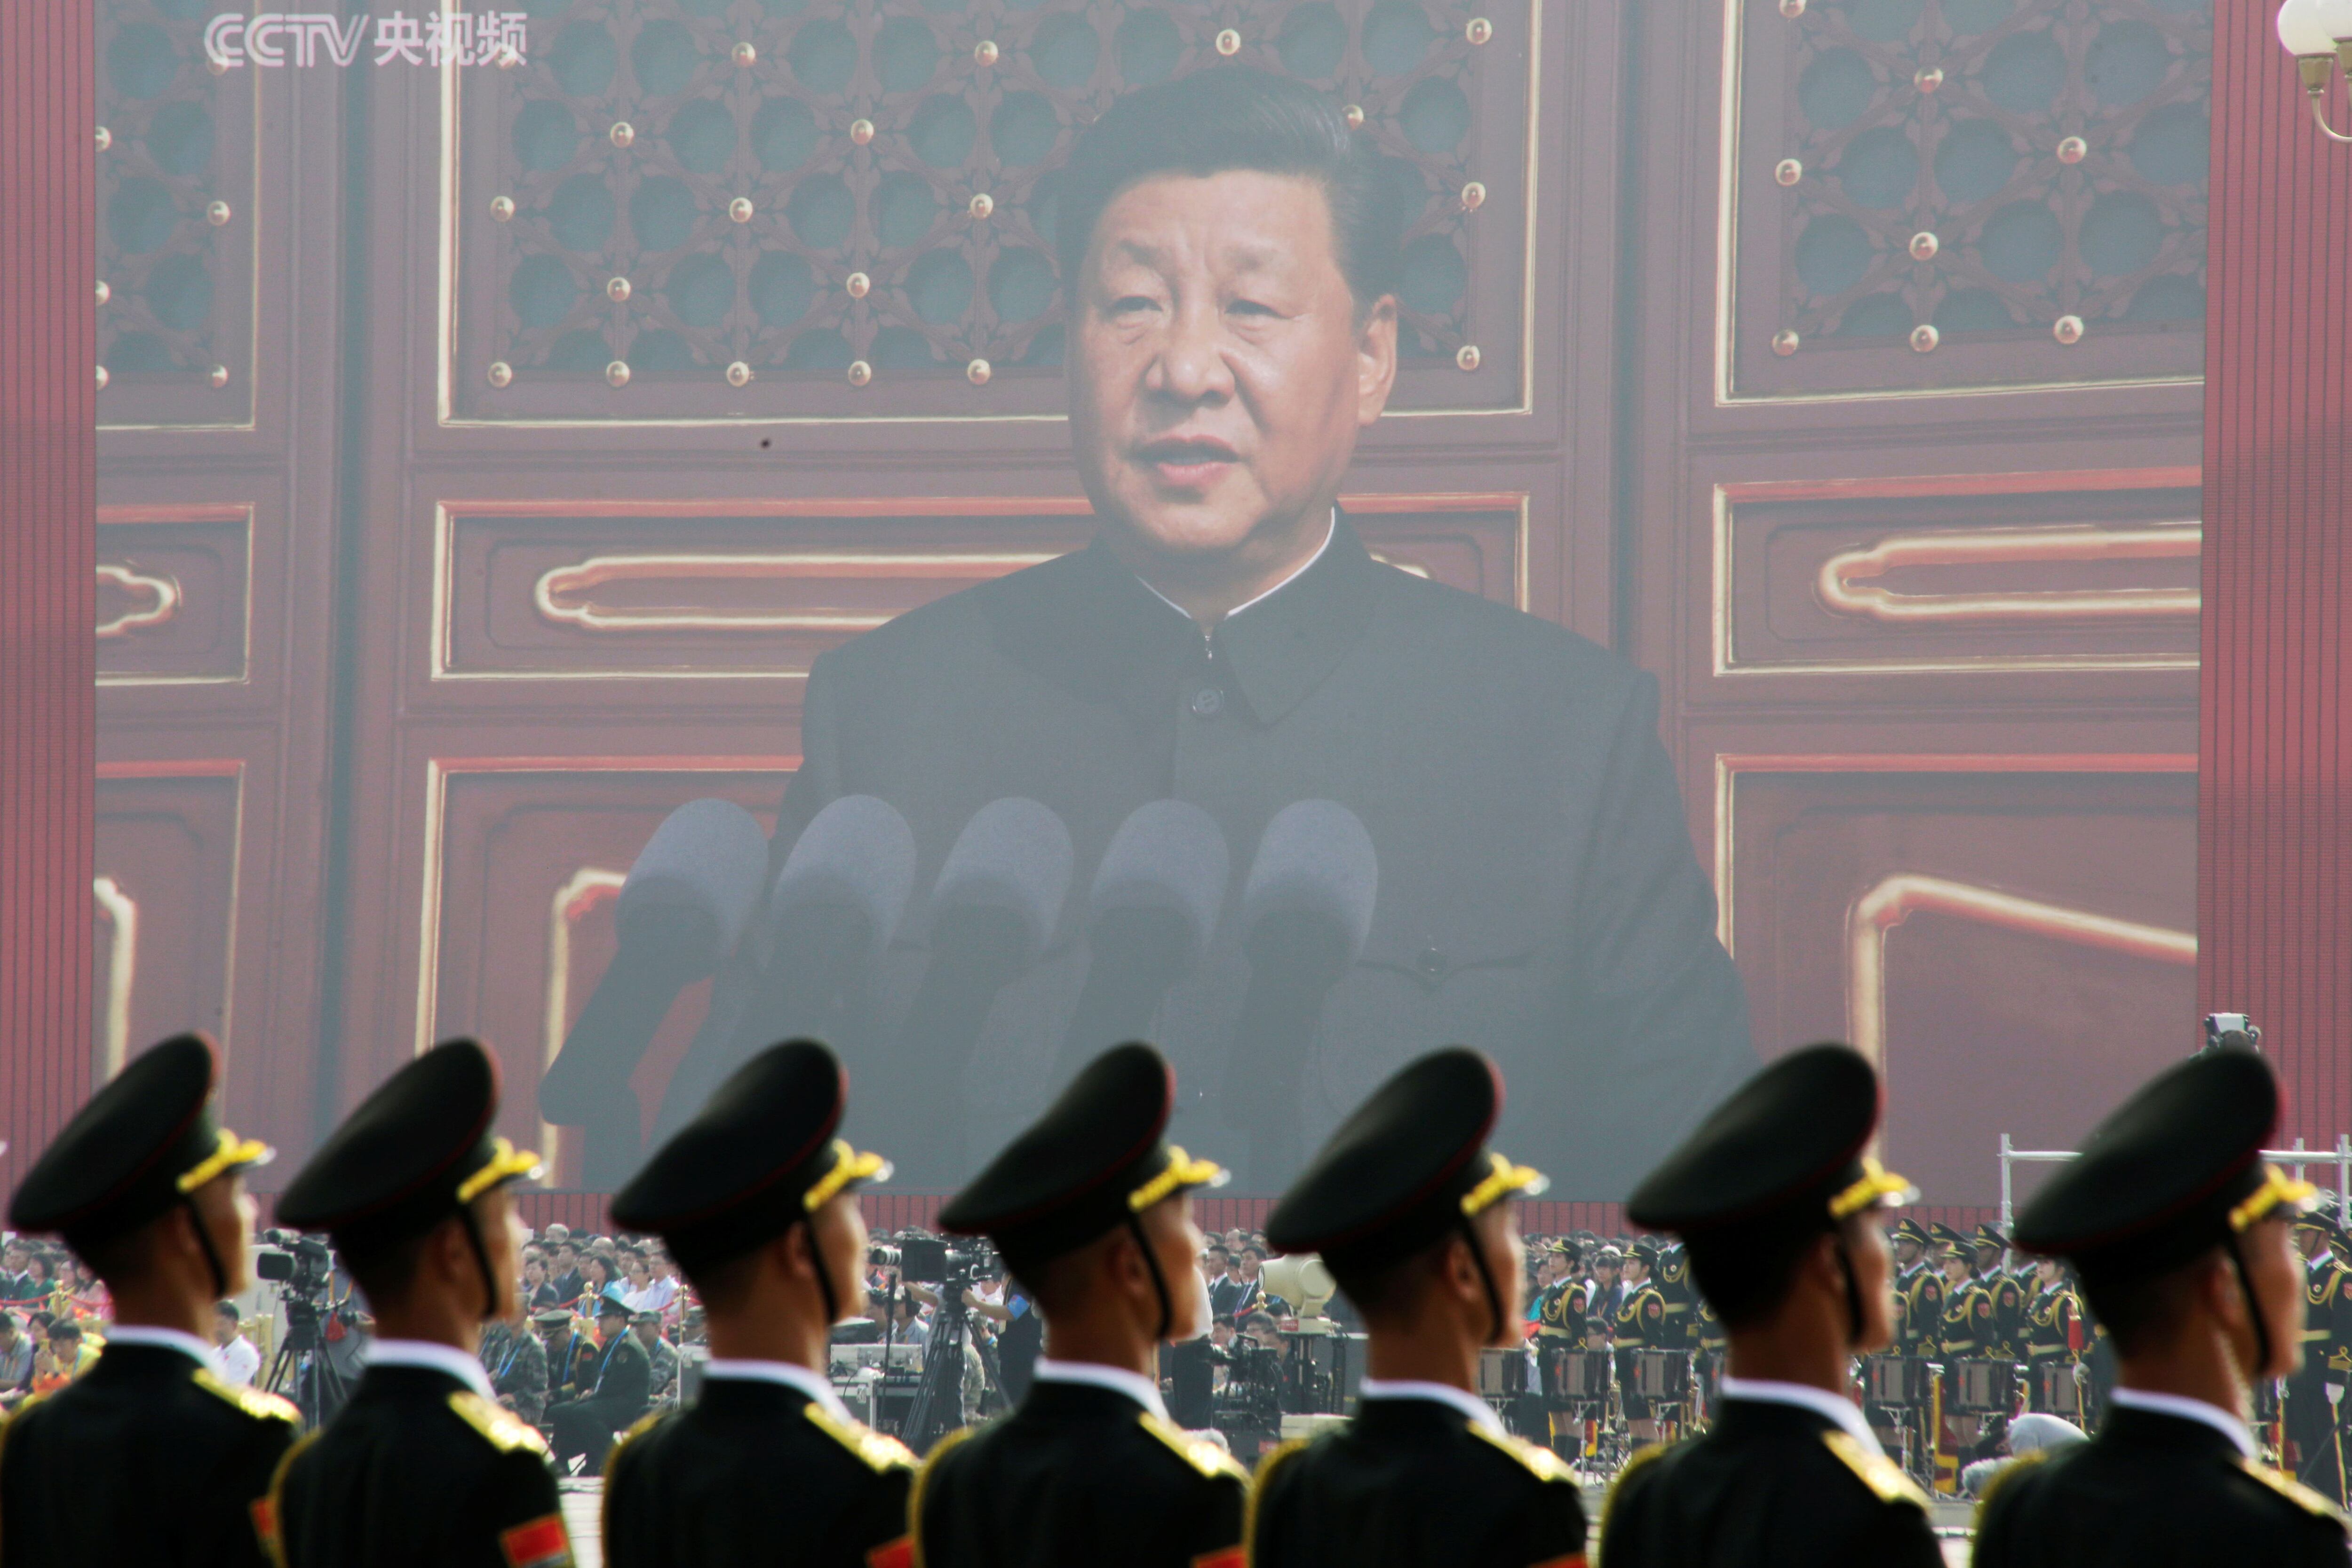  El régimen de Xi Jinping ha prometido recuperar Taiwán